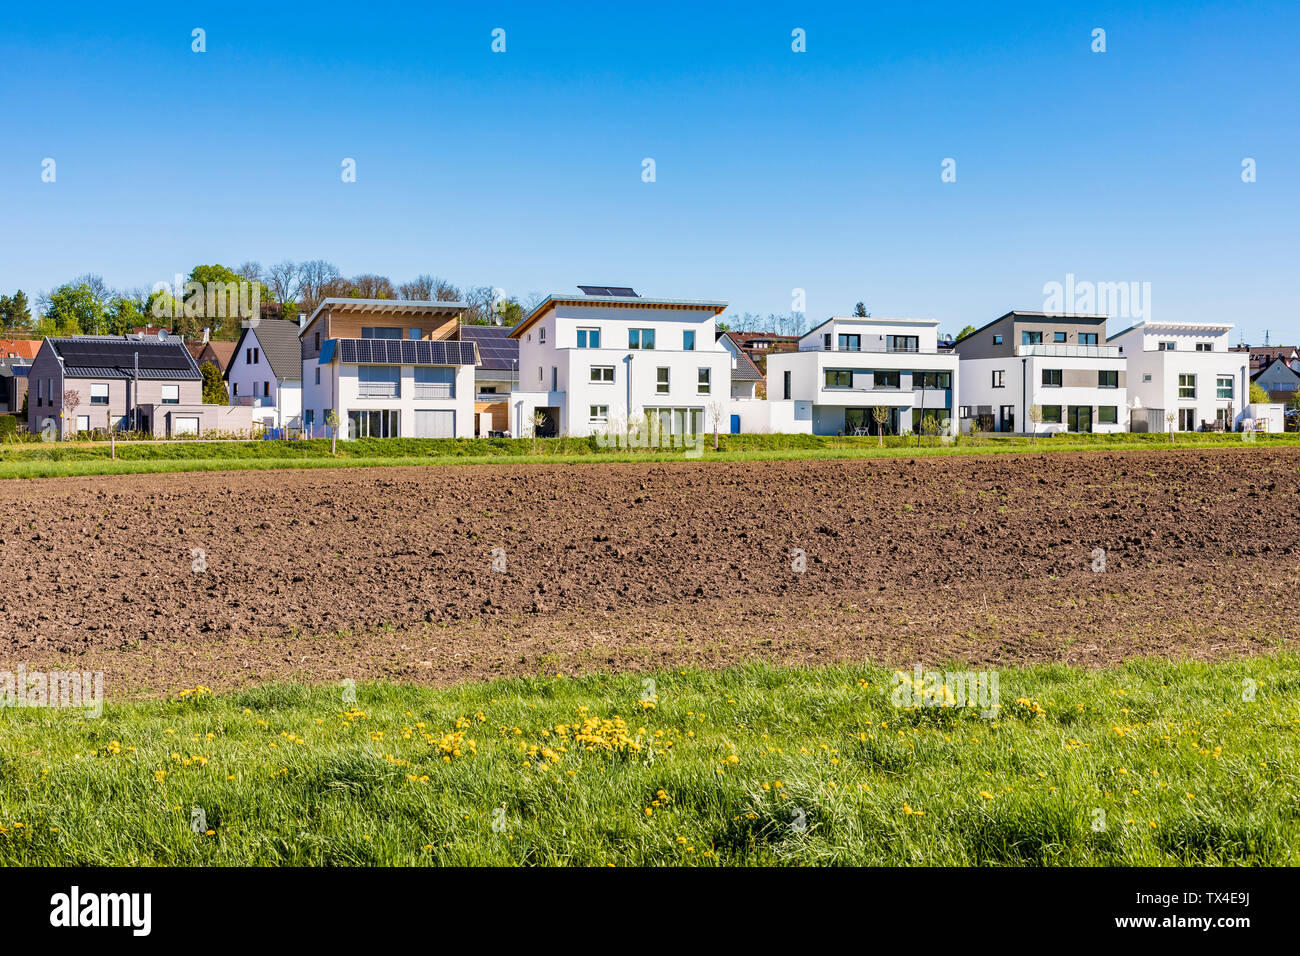 Deutschland, Magstadt, moderne Einfamilienhäuser mit thermischer Solarenergie Stockfoto